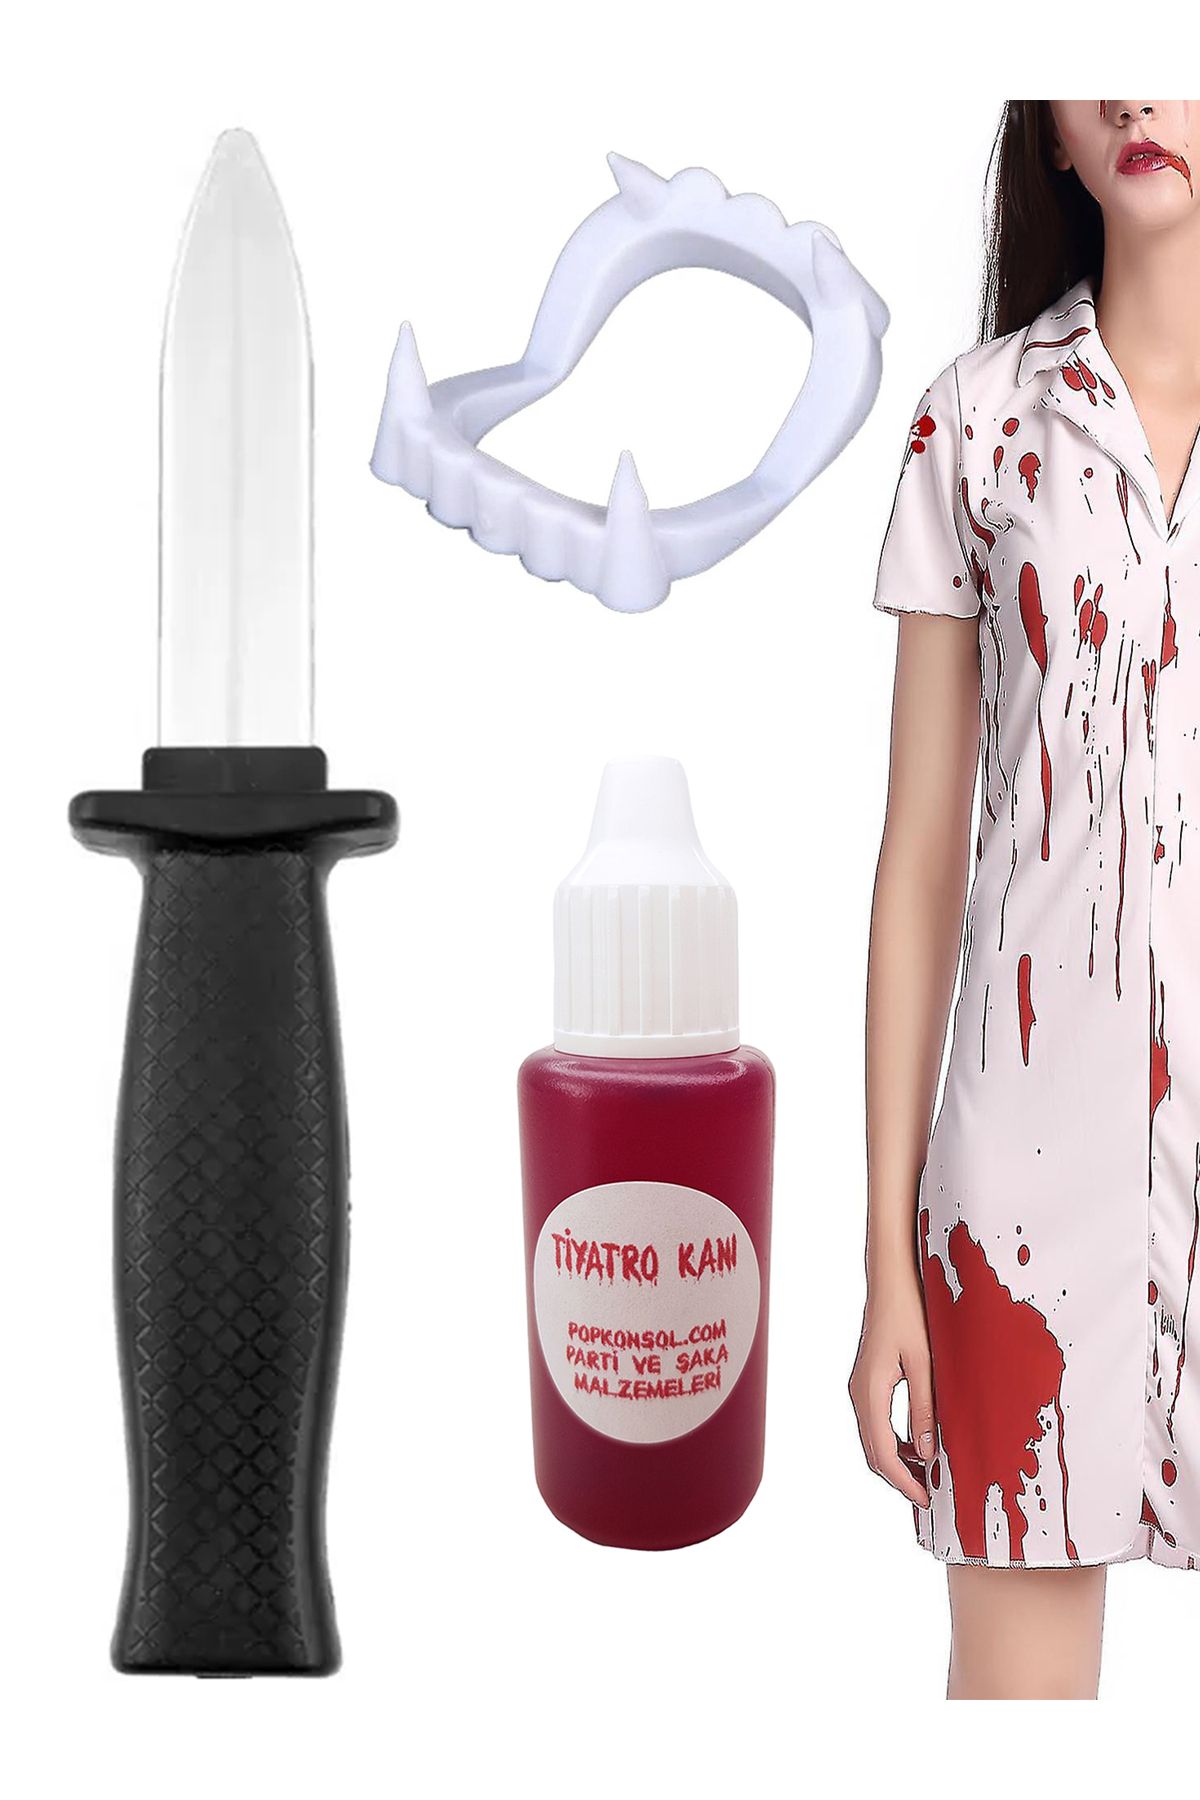 POPKONSOL Şaka Bıçak Yapay Kan Vampir Dişi Set Tiyatro Kanı Cadılar Bayramı Şaka Malzemesi Beyaz